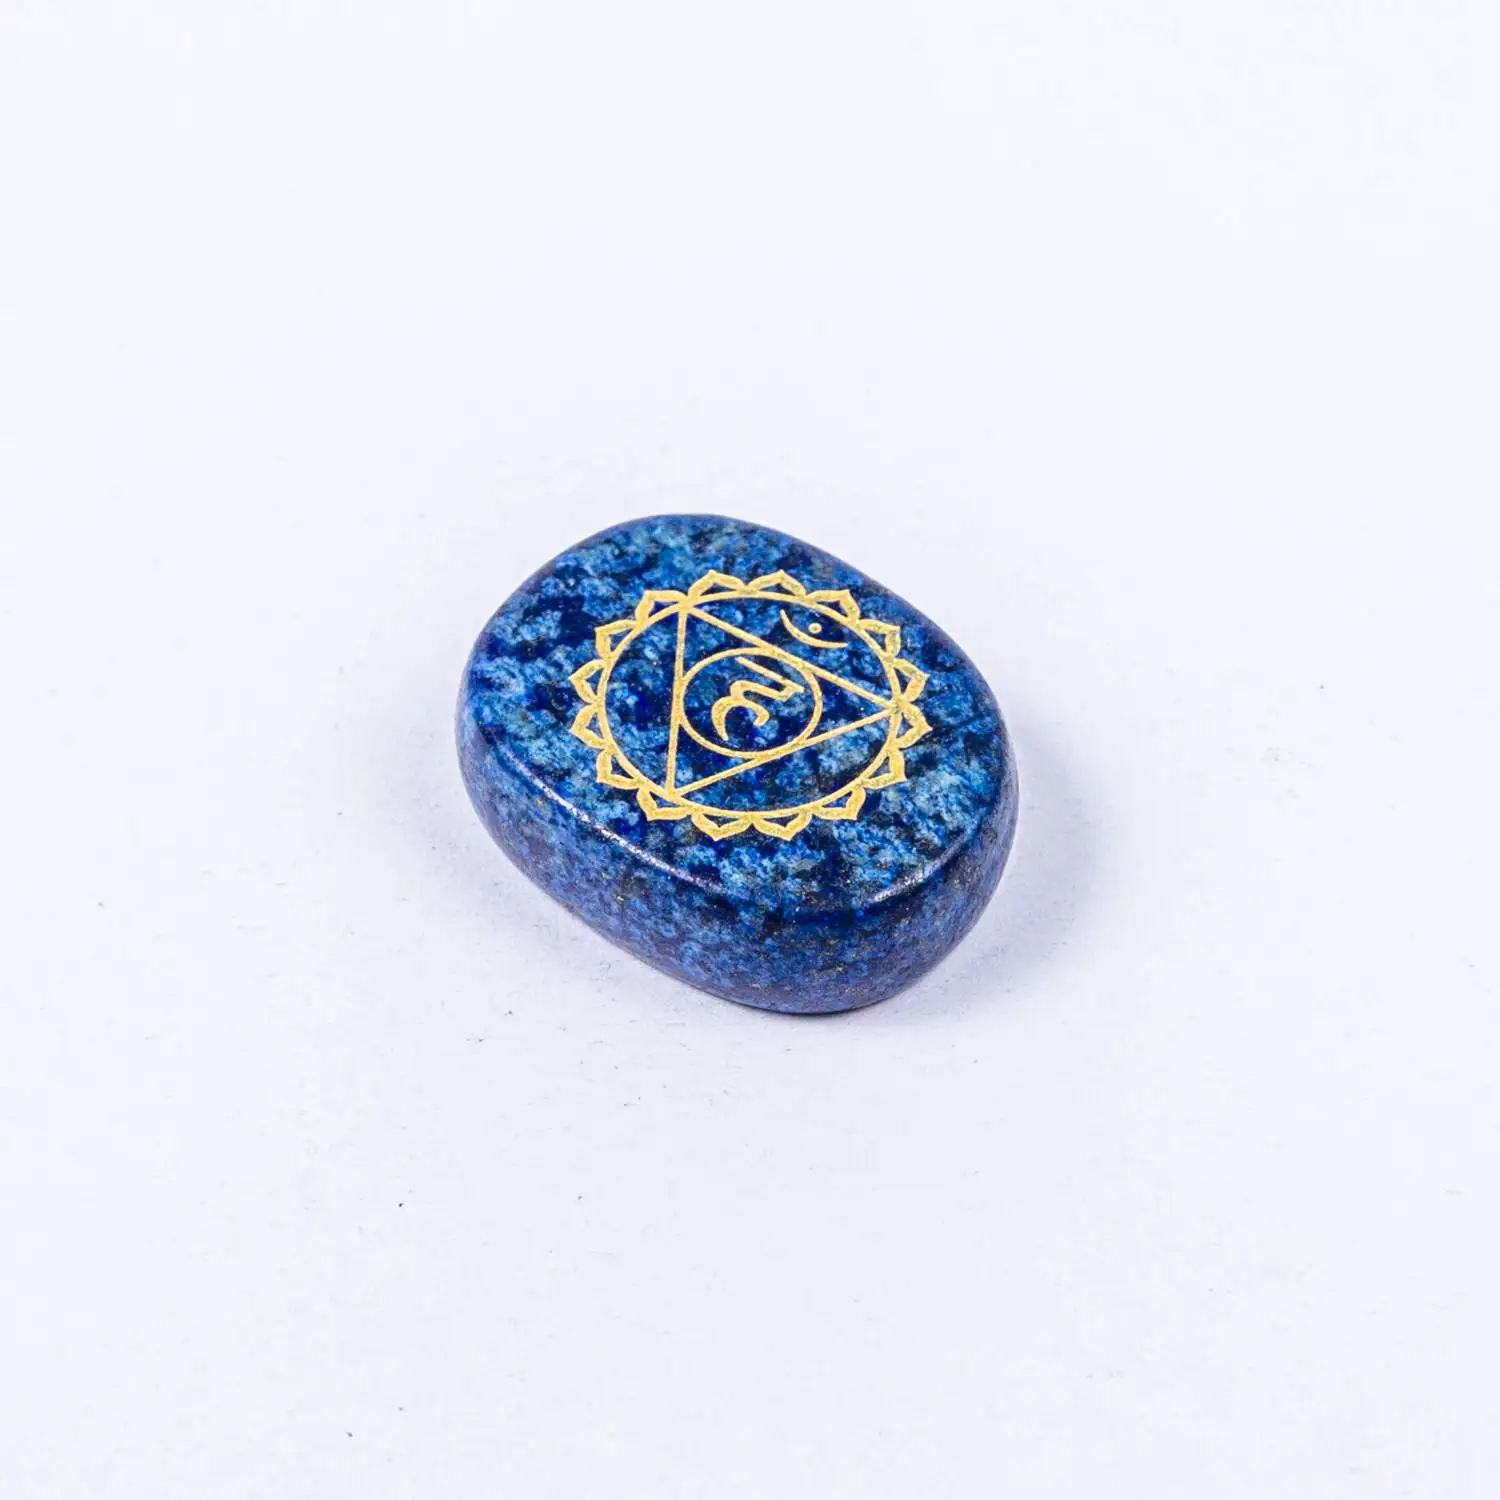 15 мм* 25 мм 7 чакра камни набор кристалл энергетический Камень индийский Йога Медитация бусины из лечебных камней украшения ювелирных изделий